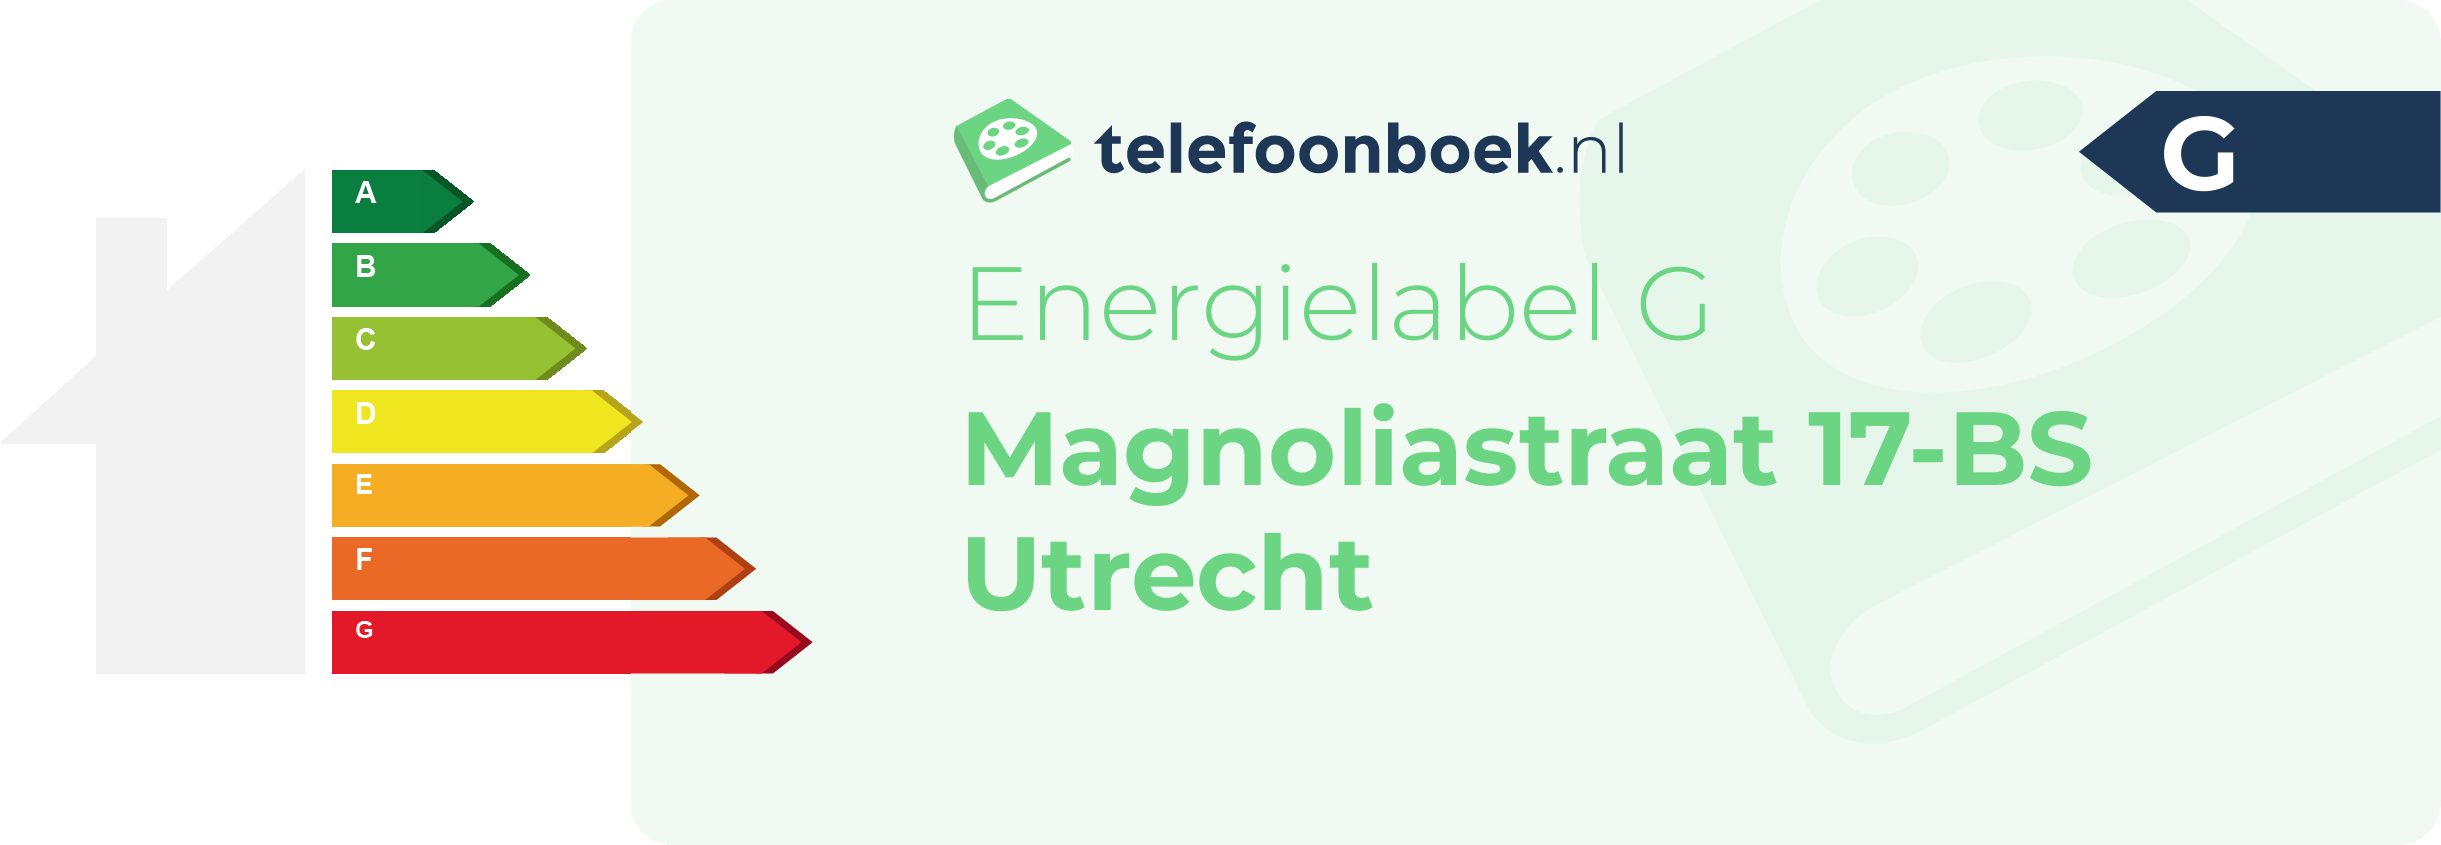 Energielabel Magnoliastraat 17-BS Utrecht